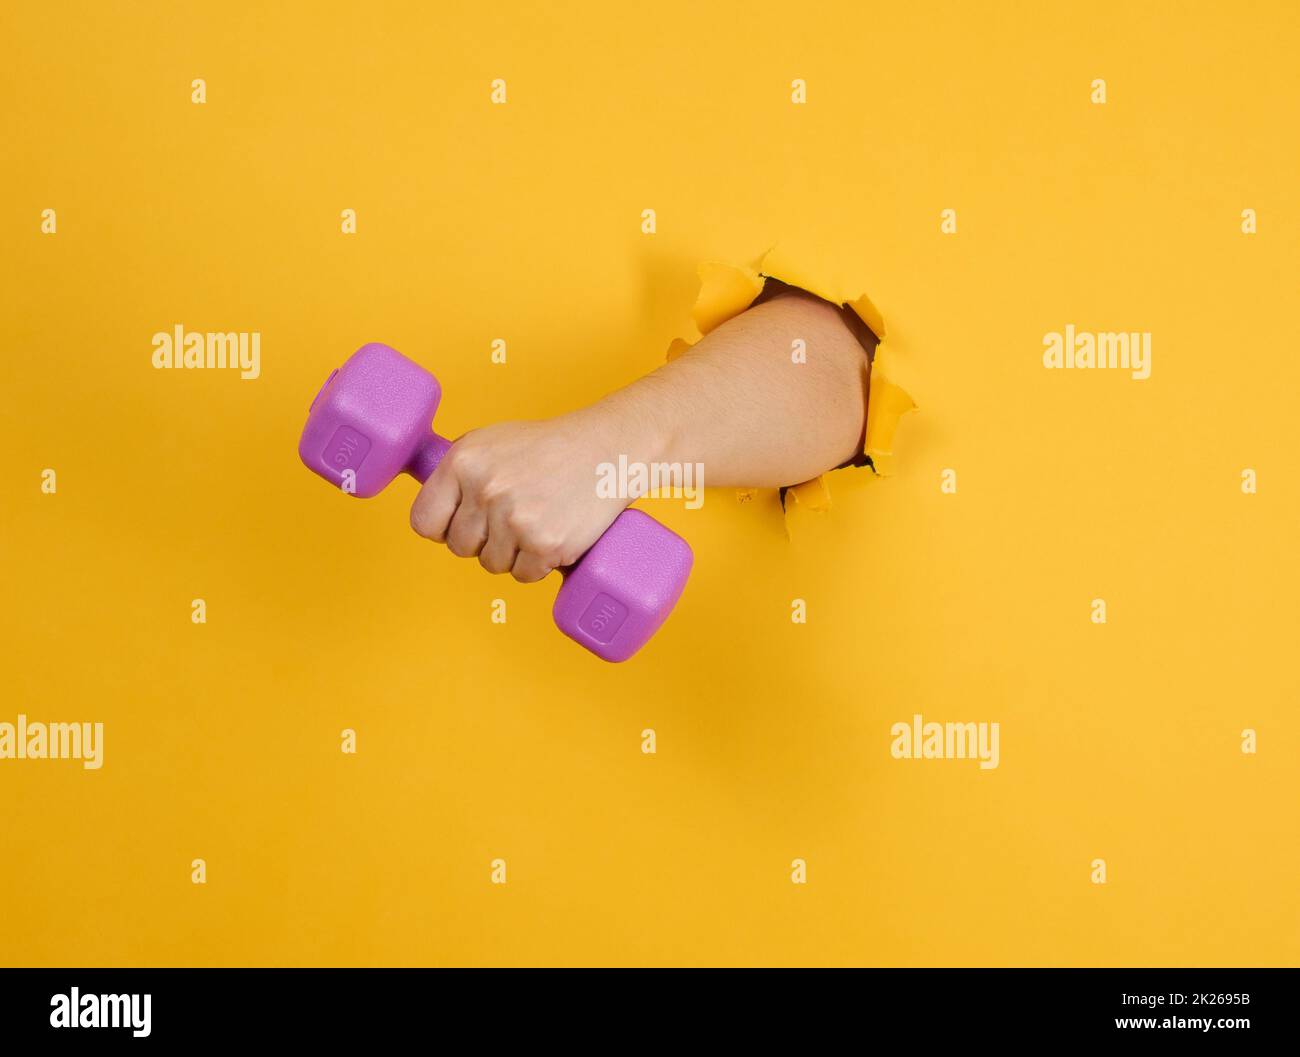 Weibliche Hand hält eine Plastik-Kilogramm-Kurzhantel auf gelbem Hintergrund, ein Teil des Körpers ragt aus einem gerissenen Loch auf einem Papierhintergrund heraus. Gesunder Lebensstil, Sport Stockfoto